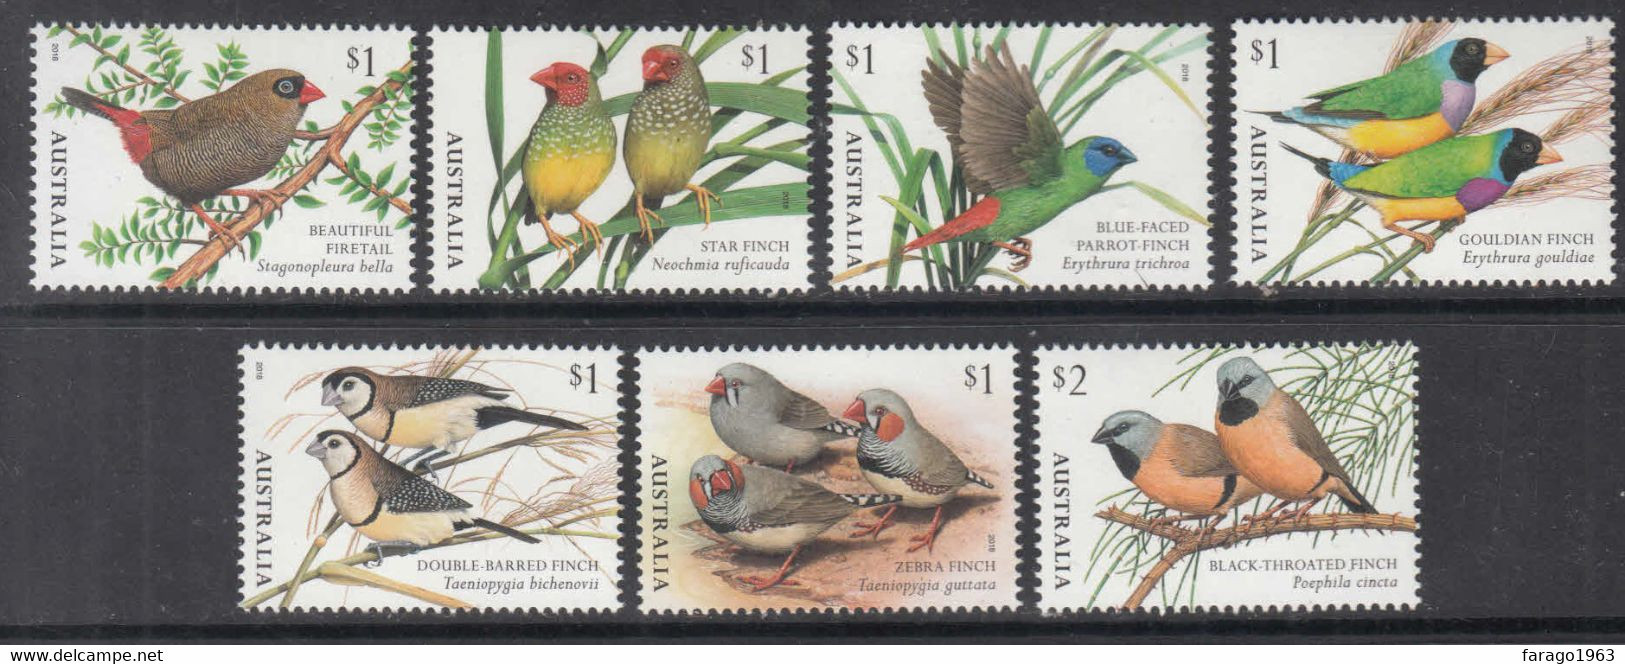 2018 Australia Finches Birds Complete Set Of 7 MNH - Ungebraucht